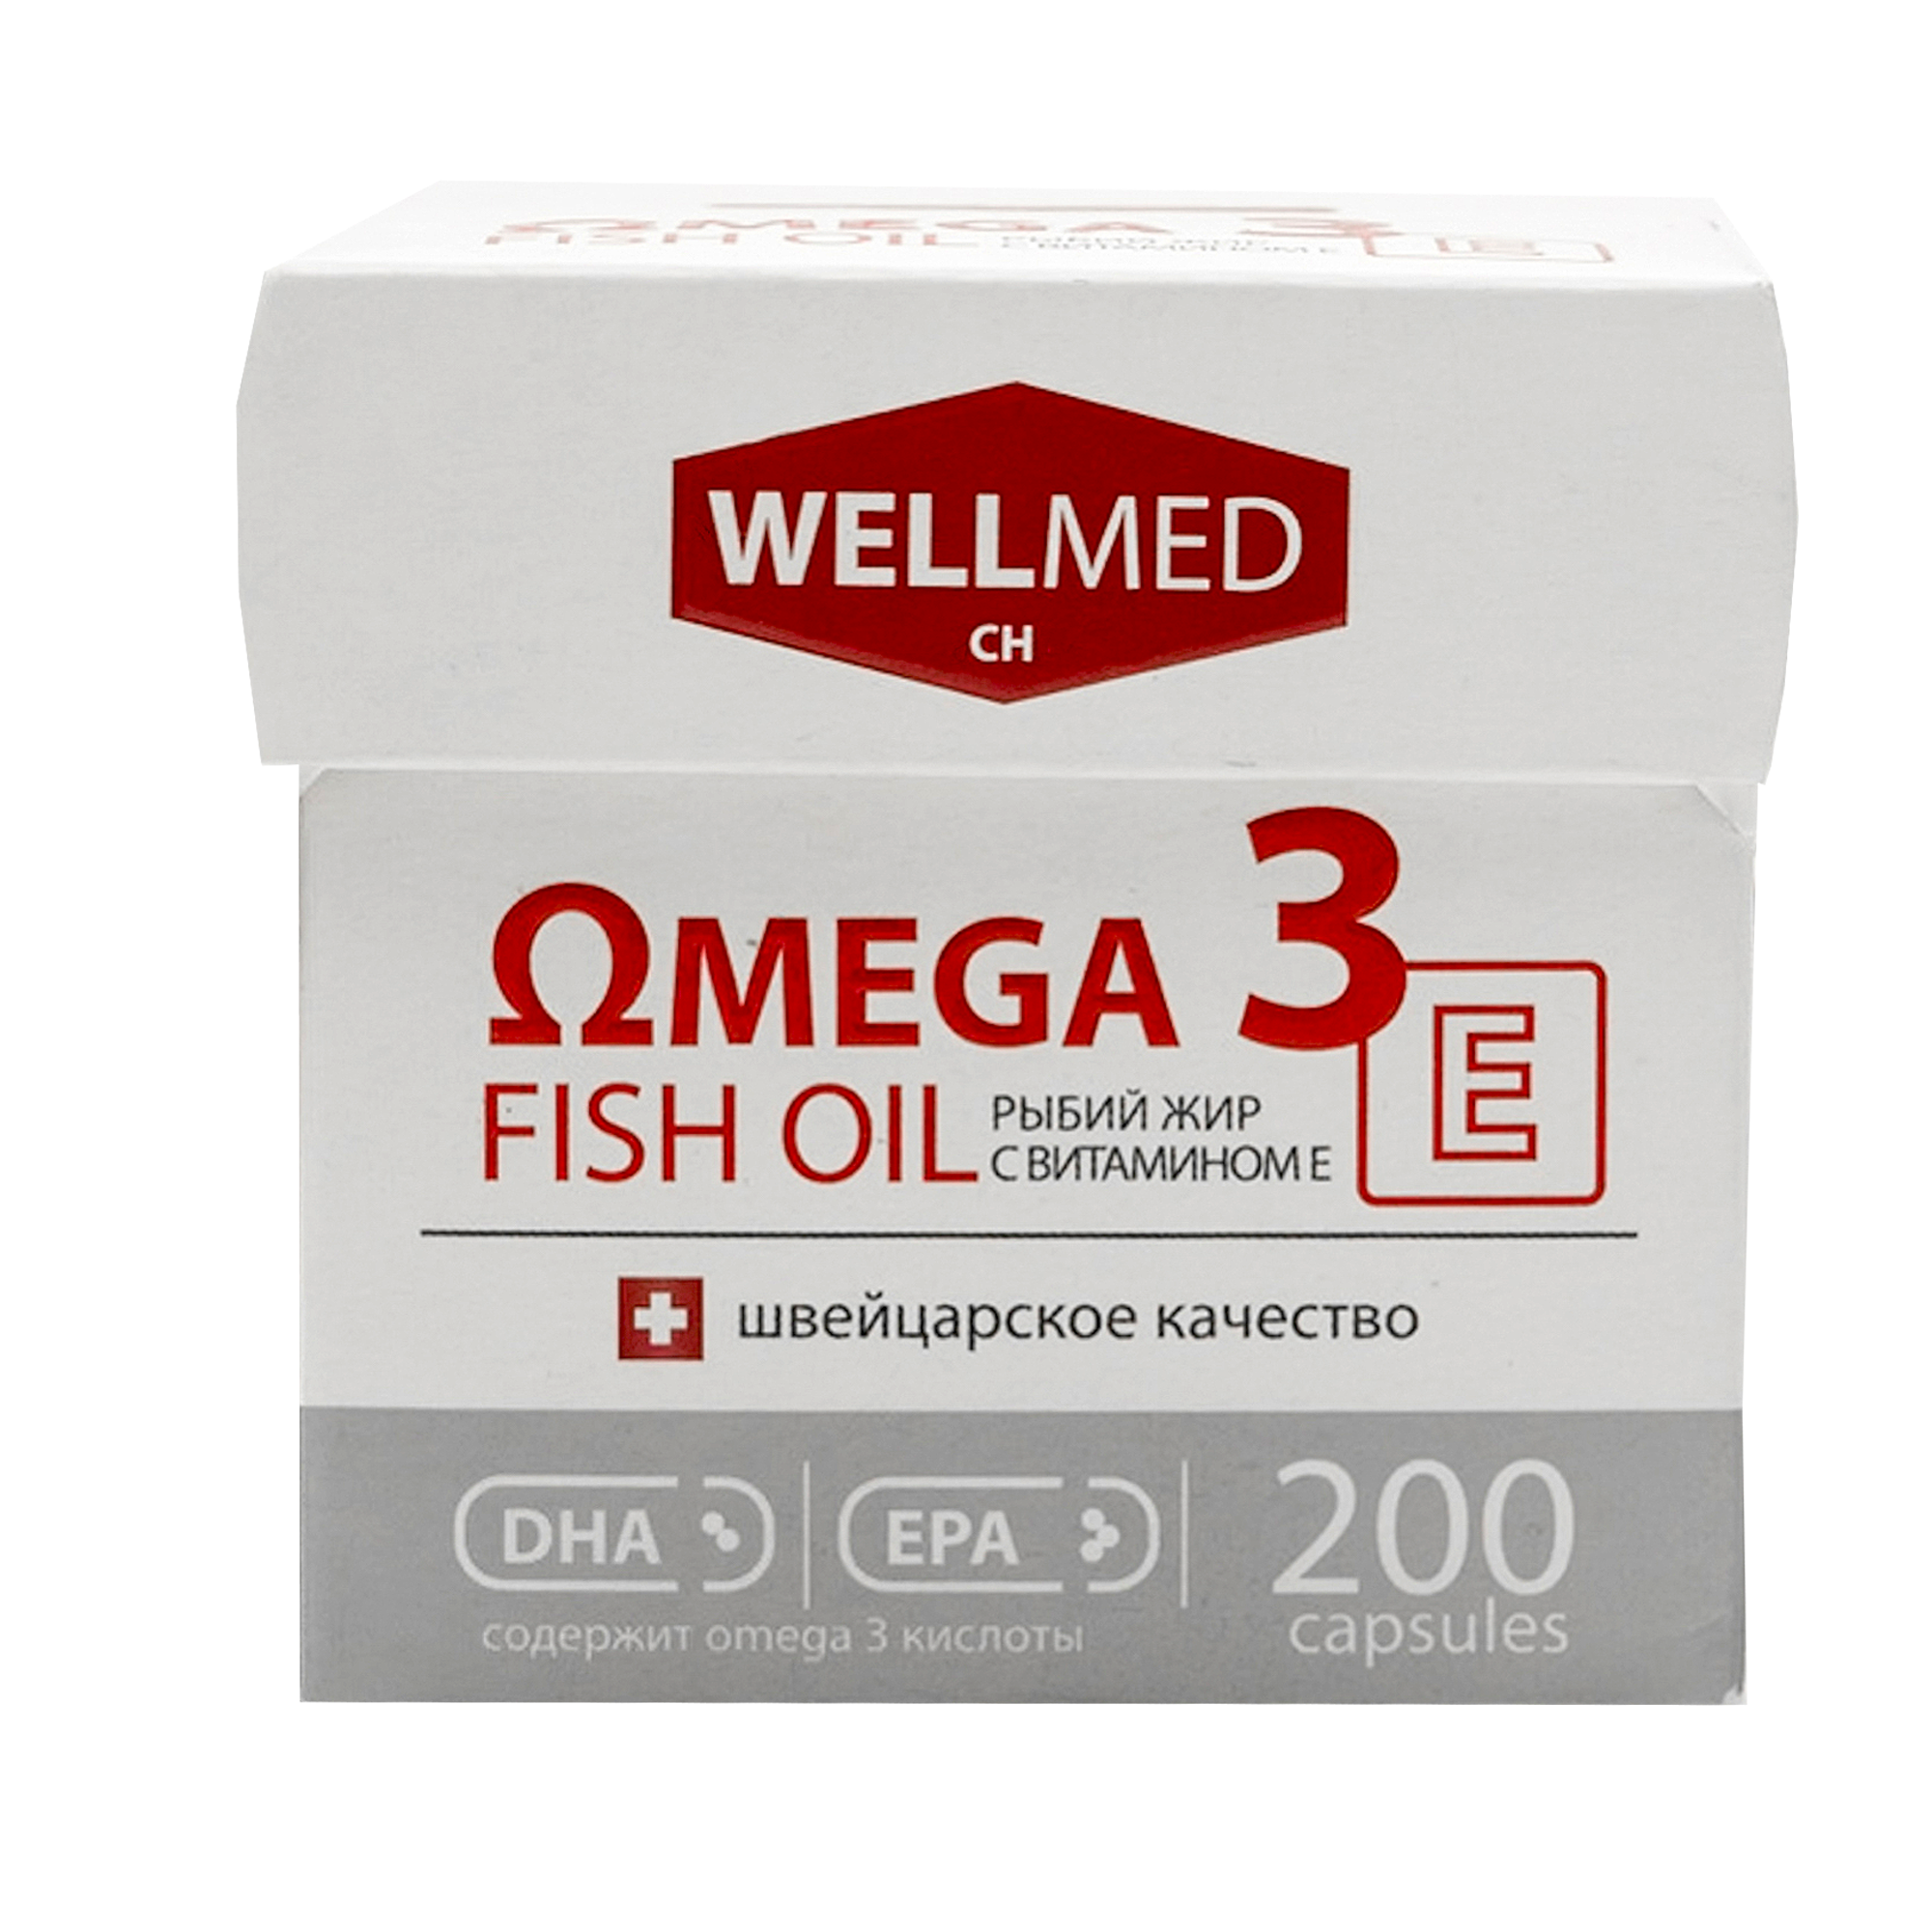 Рыбий жир для женщин WELLMED Концентрат Omega-3 с витамином E 200 капсул Fish oil - фото 1